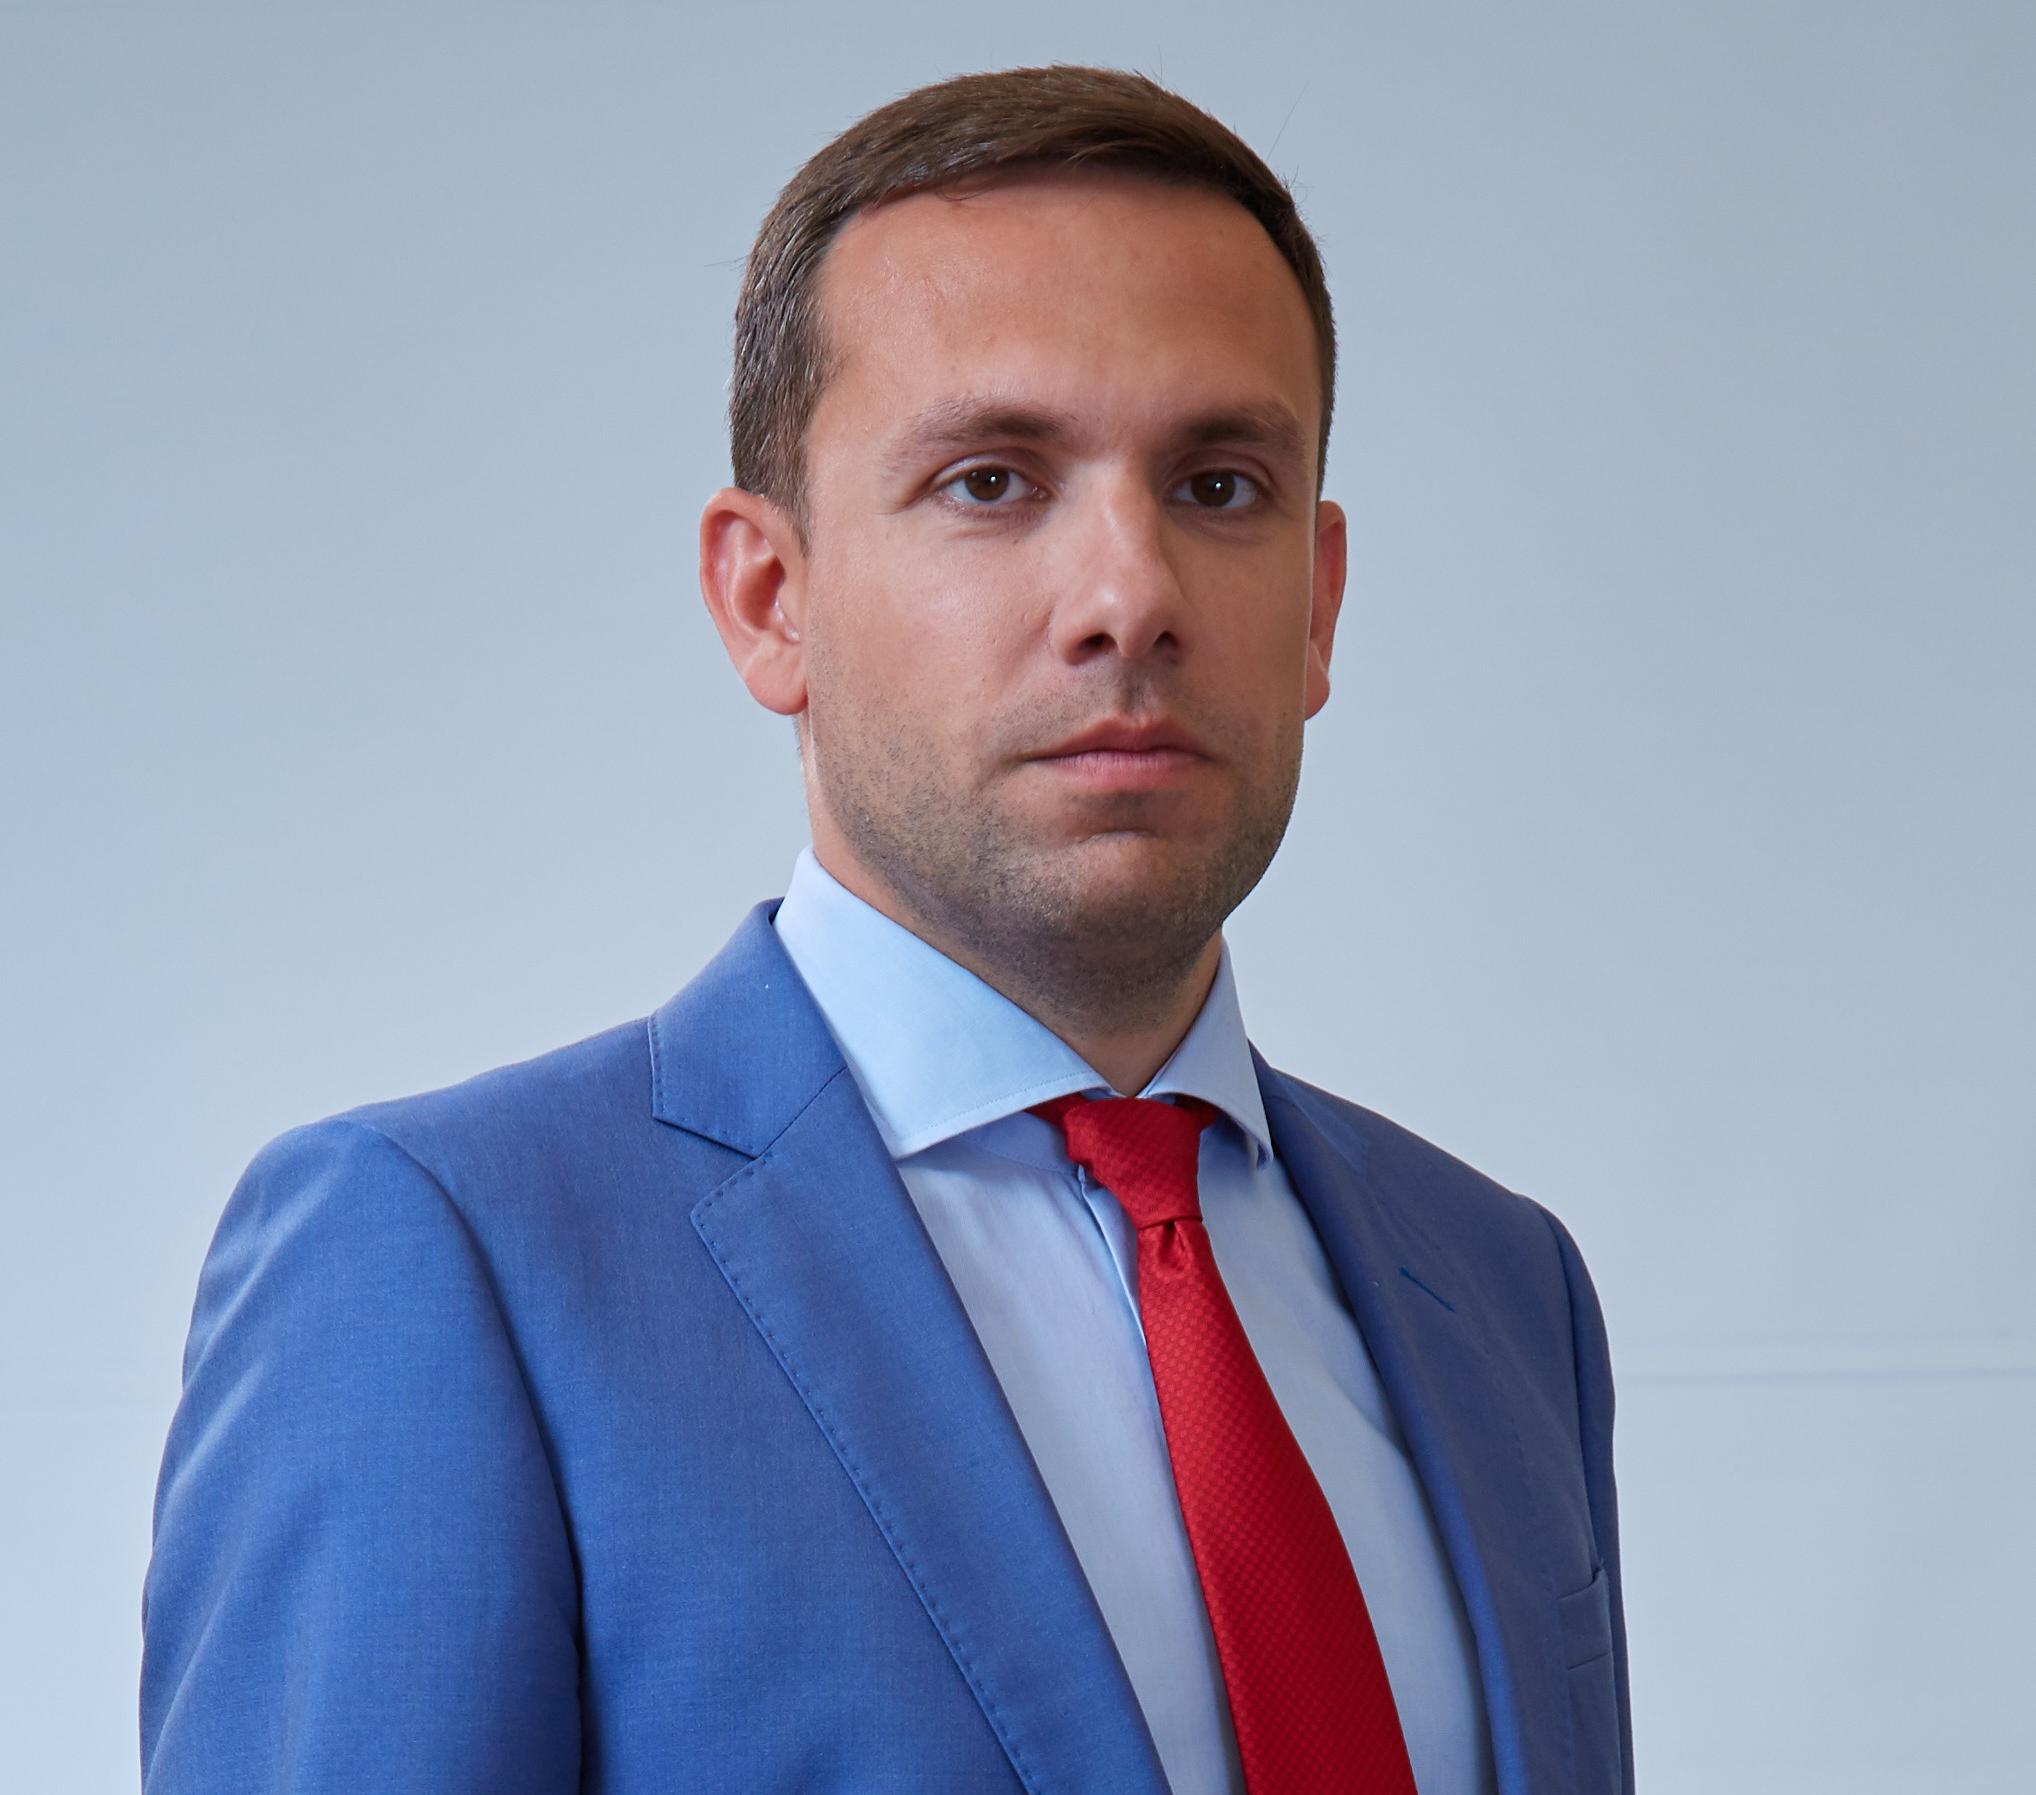 Олег Тодуа, Cопредседатель РАА40, назначен на должность локального партнера «Уайт энд Кейс»